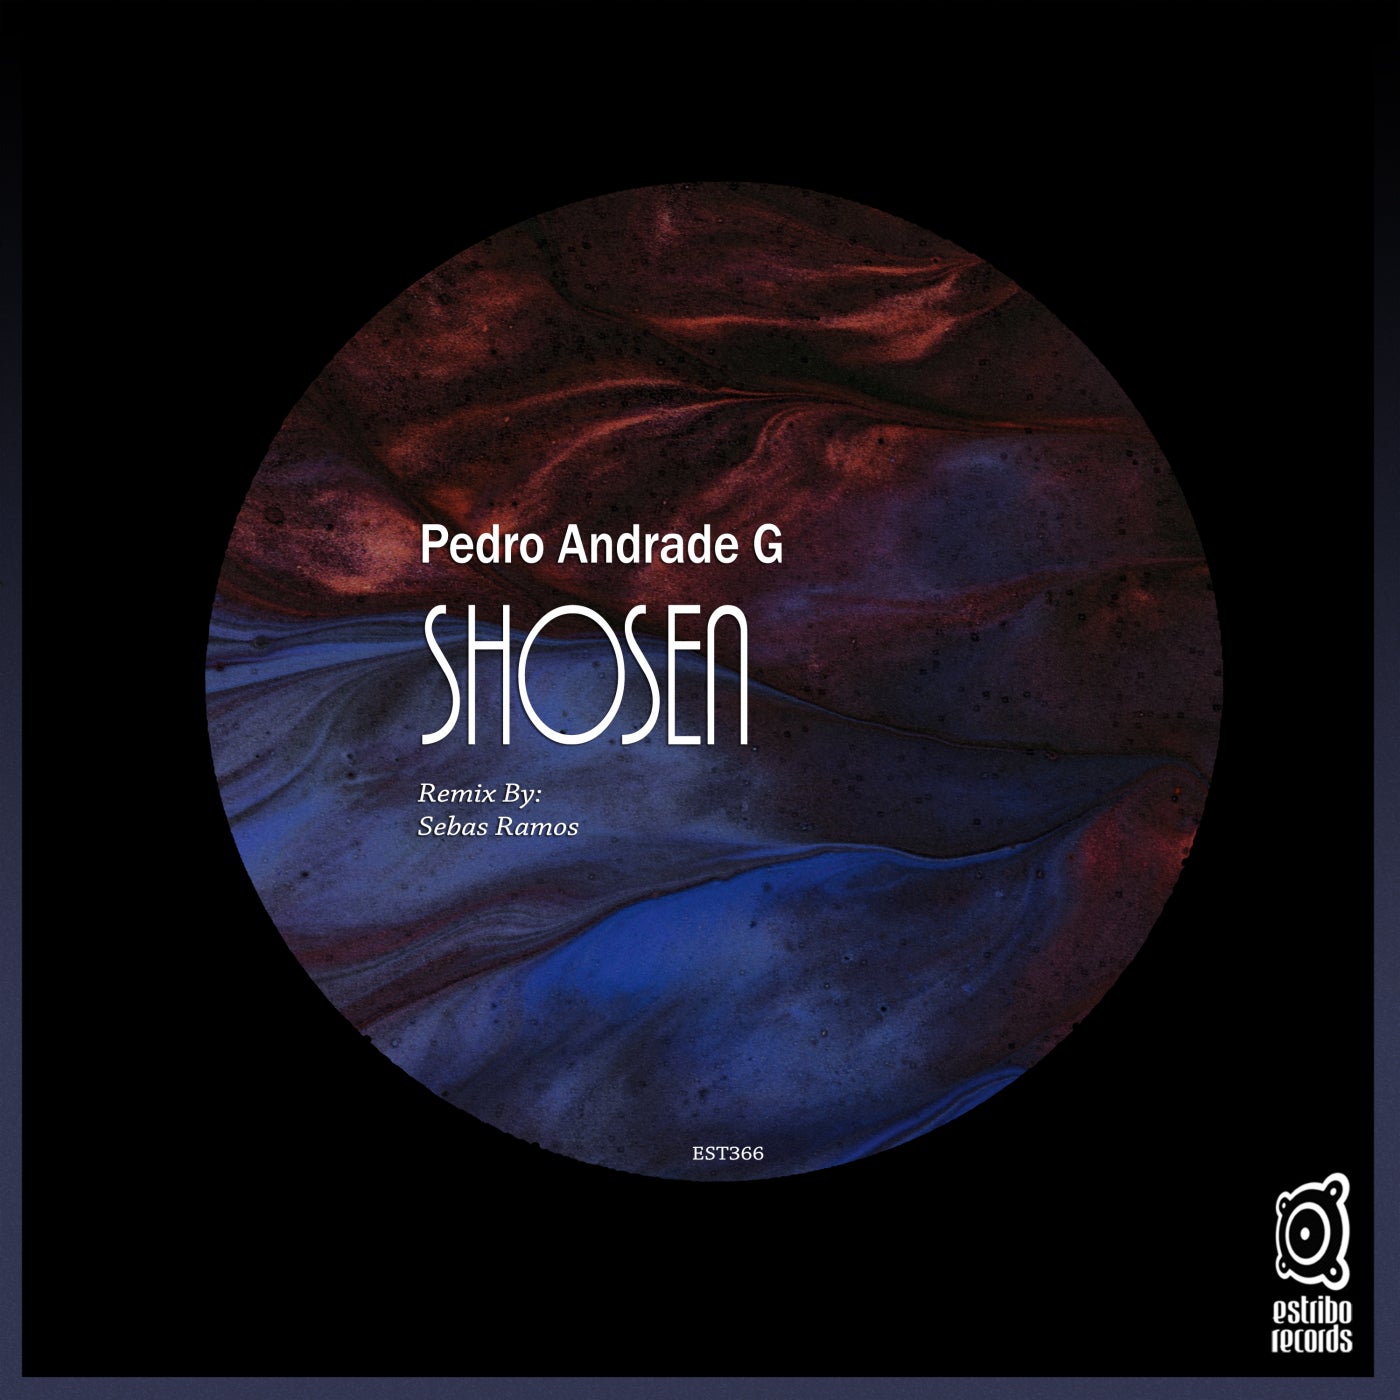 Pedro Andrade G - Shosen [EST366]